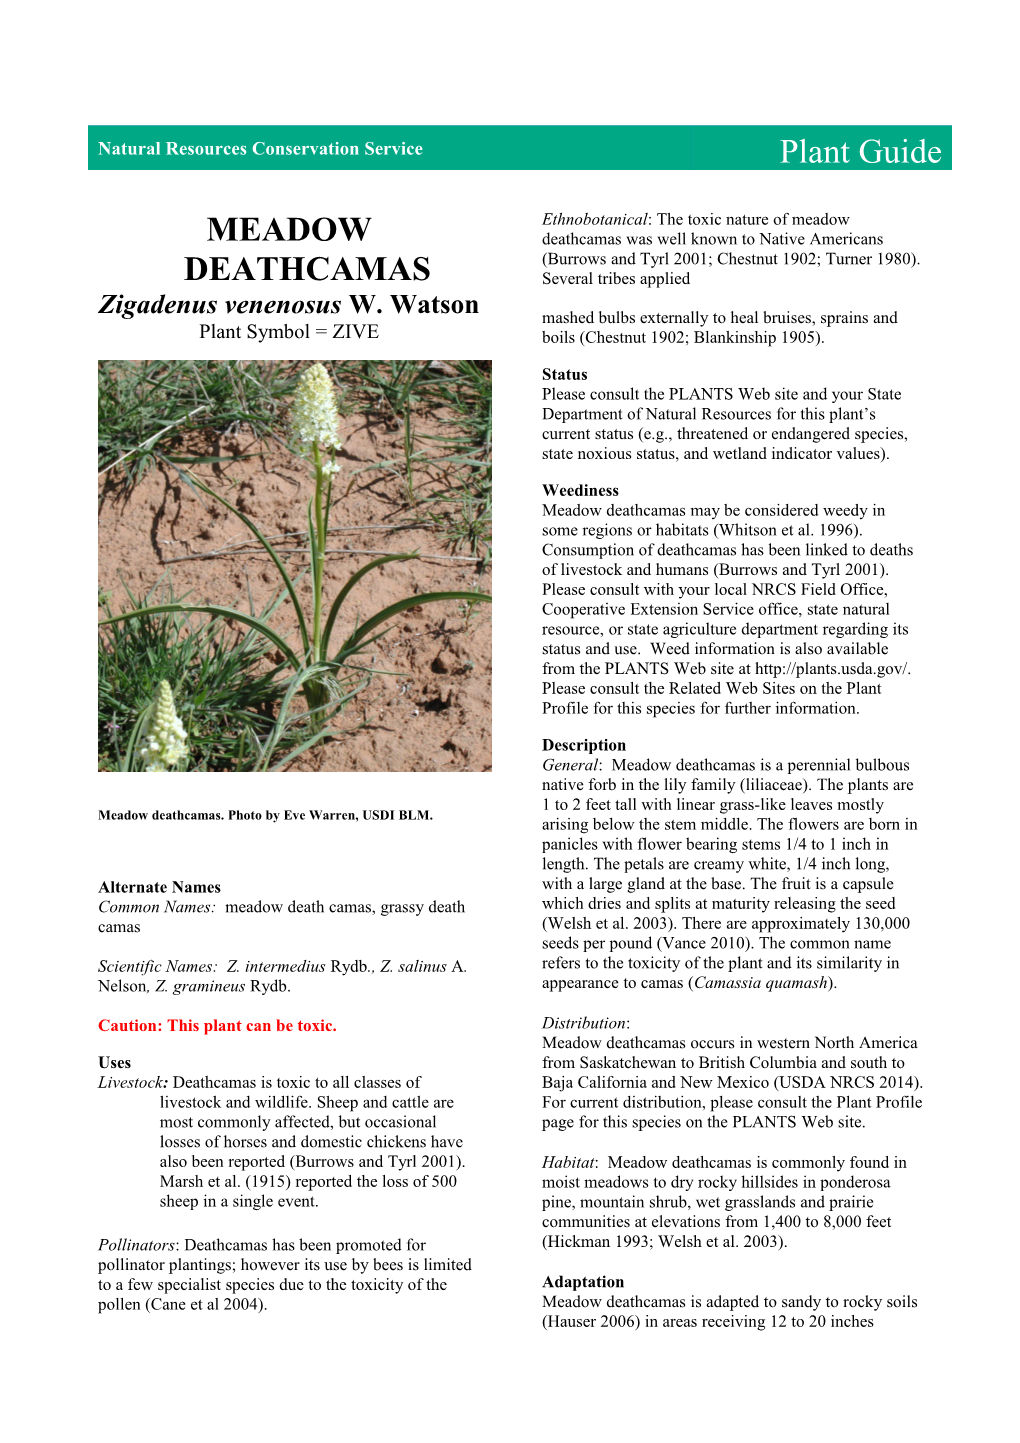 Plant Guide for Meadow Deathcamas (Zigadenus Venenosus)